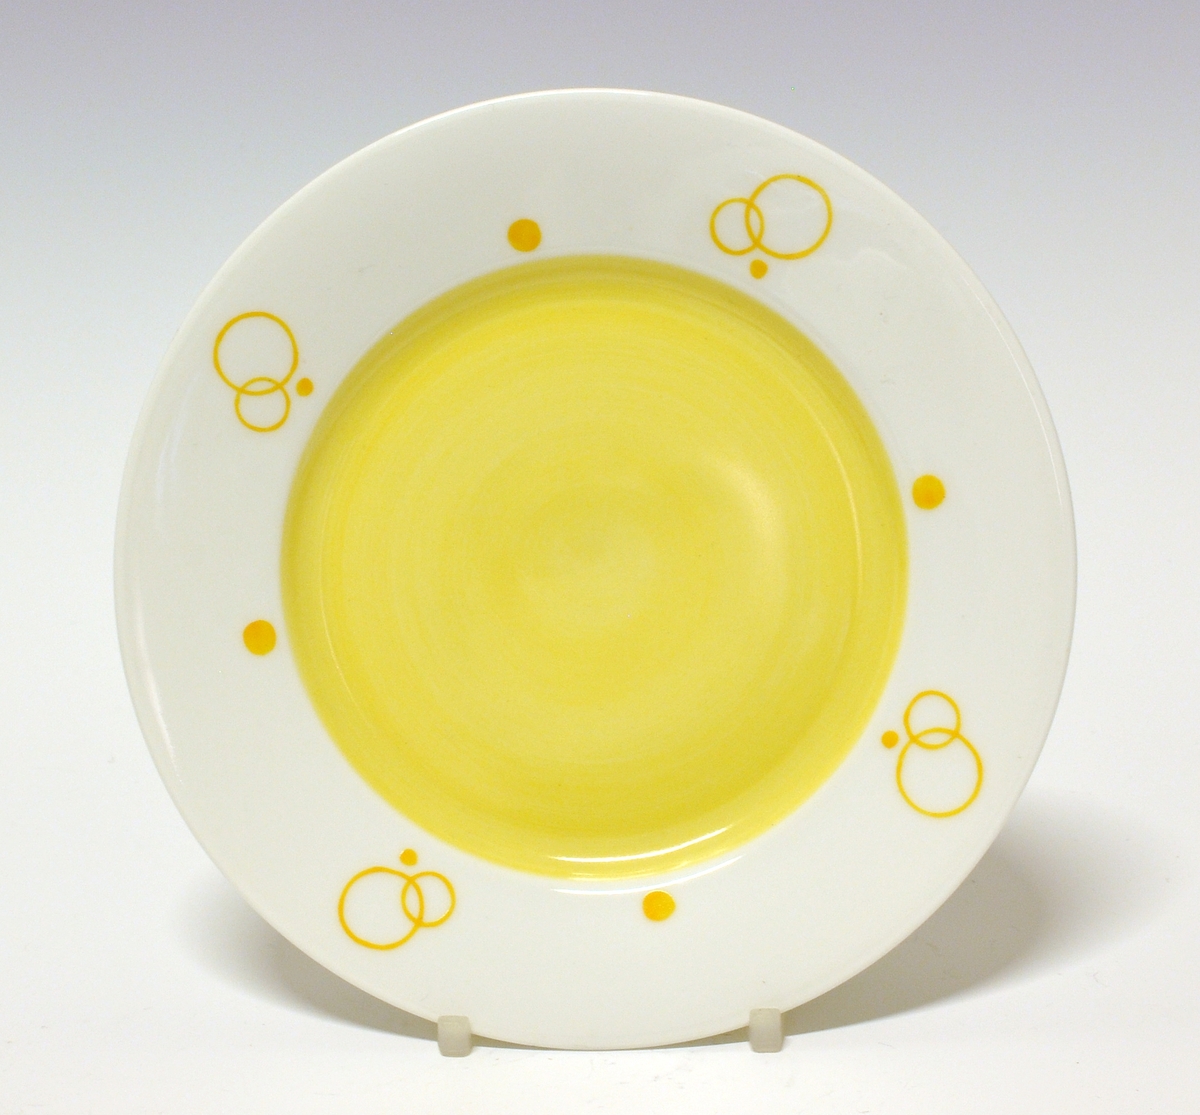 Asjett av porselen. Hvit glasur. Speilen malt gul og på fanen gule ringer og prikker.
Modell: 15.5
Dekor: 5837